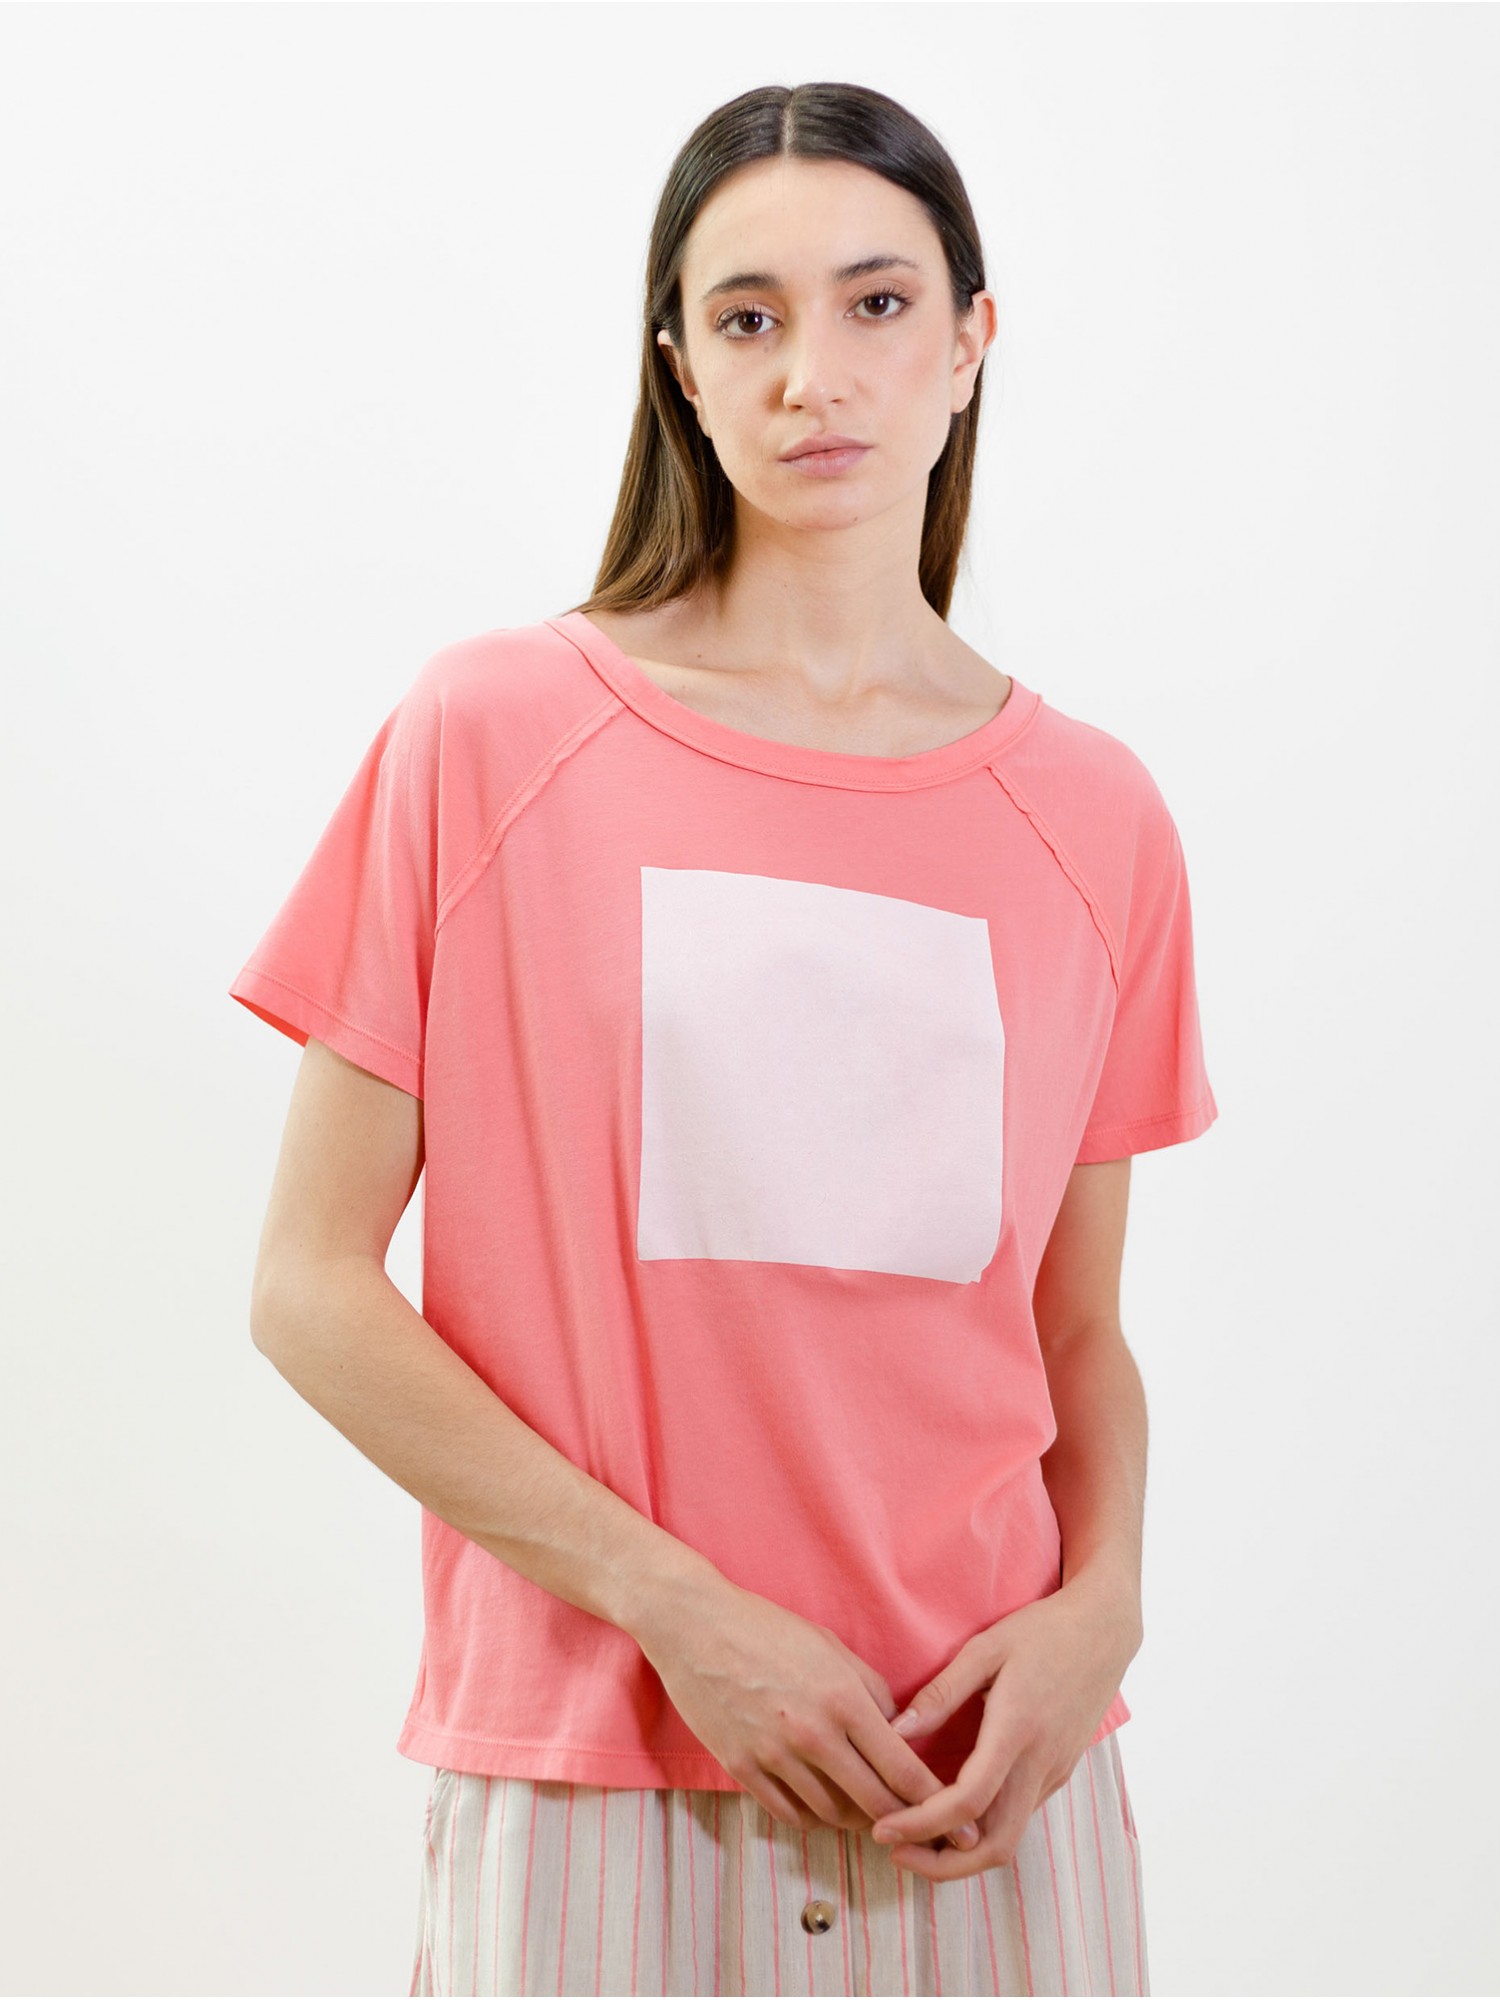 Camiseta Sorbete 1113. Colección SS23 PAN Producto Básico en candelascloset. Tejido 100% algodón rosa, estampado cuadro blanco